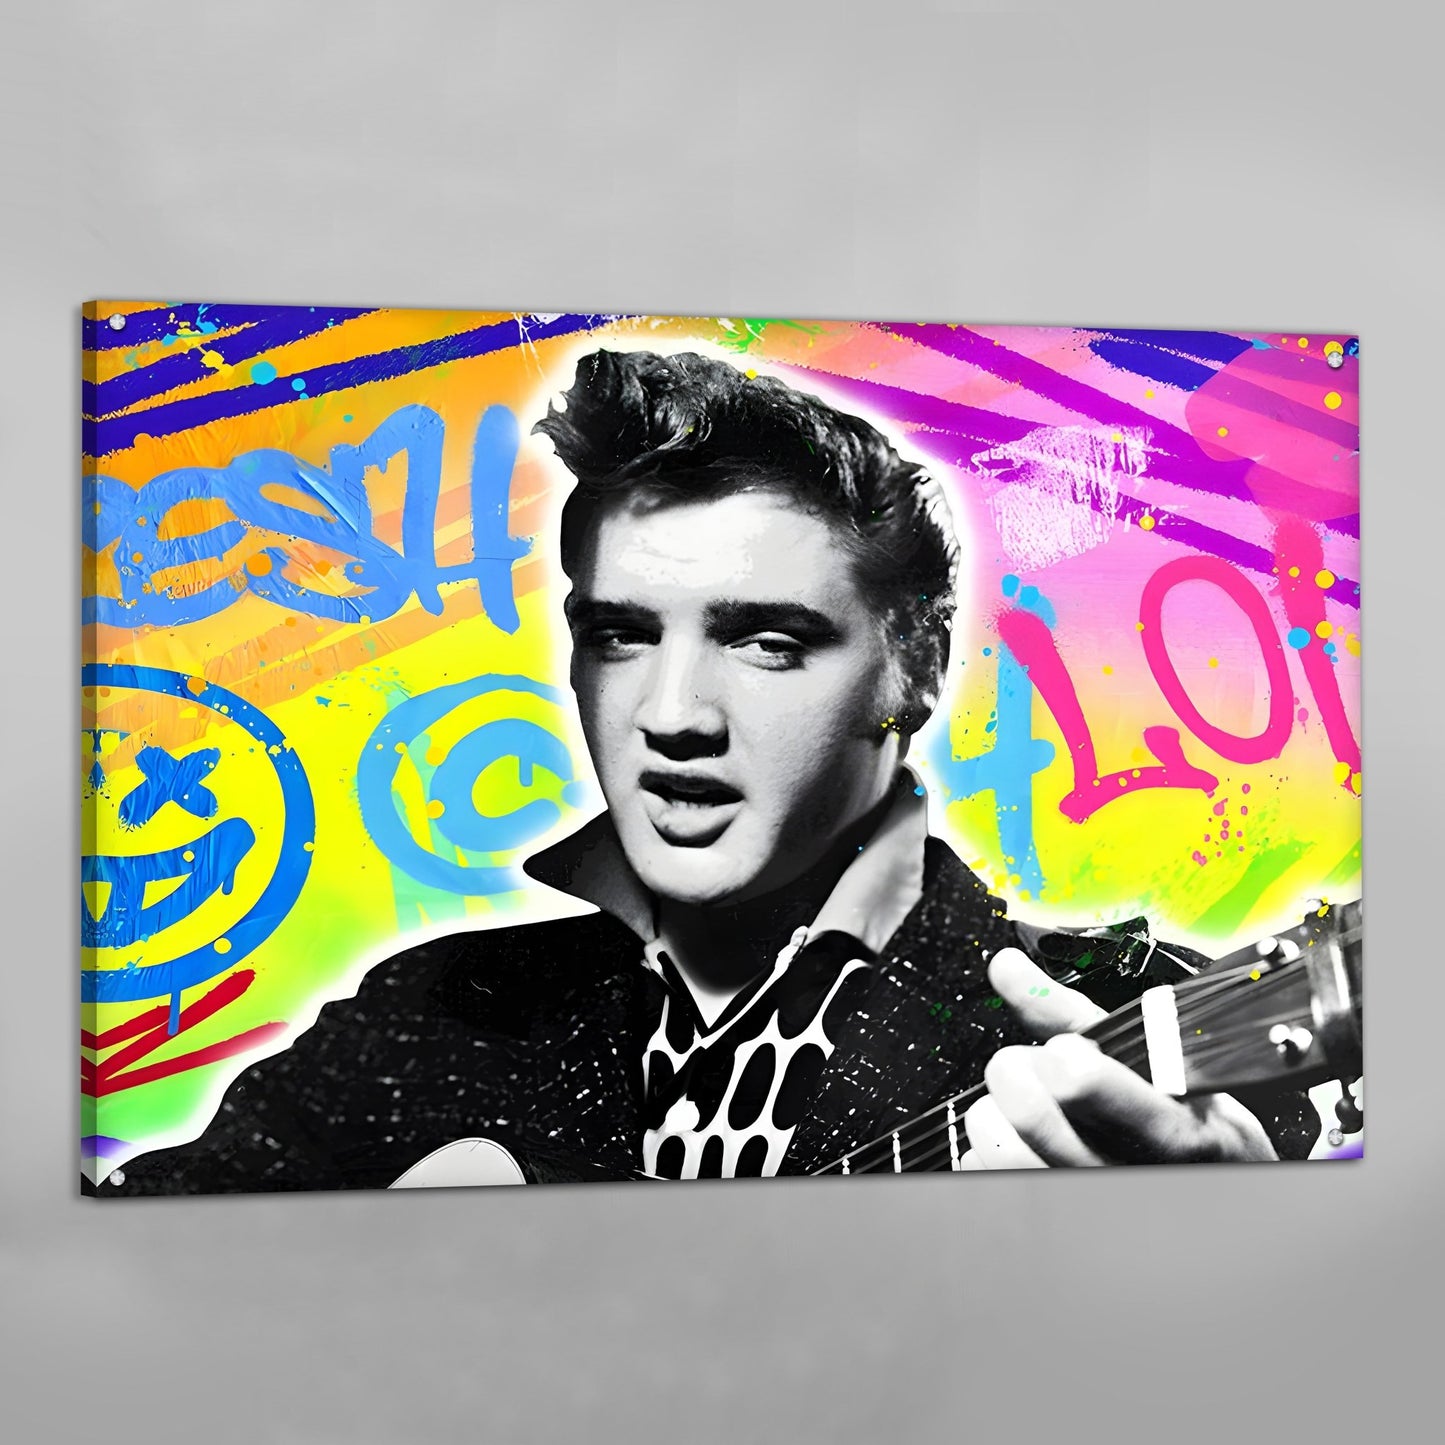 Cuadro Pop Art Elvis Presley - La Casa Del Cuadro